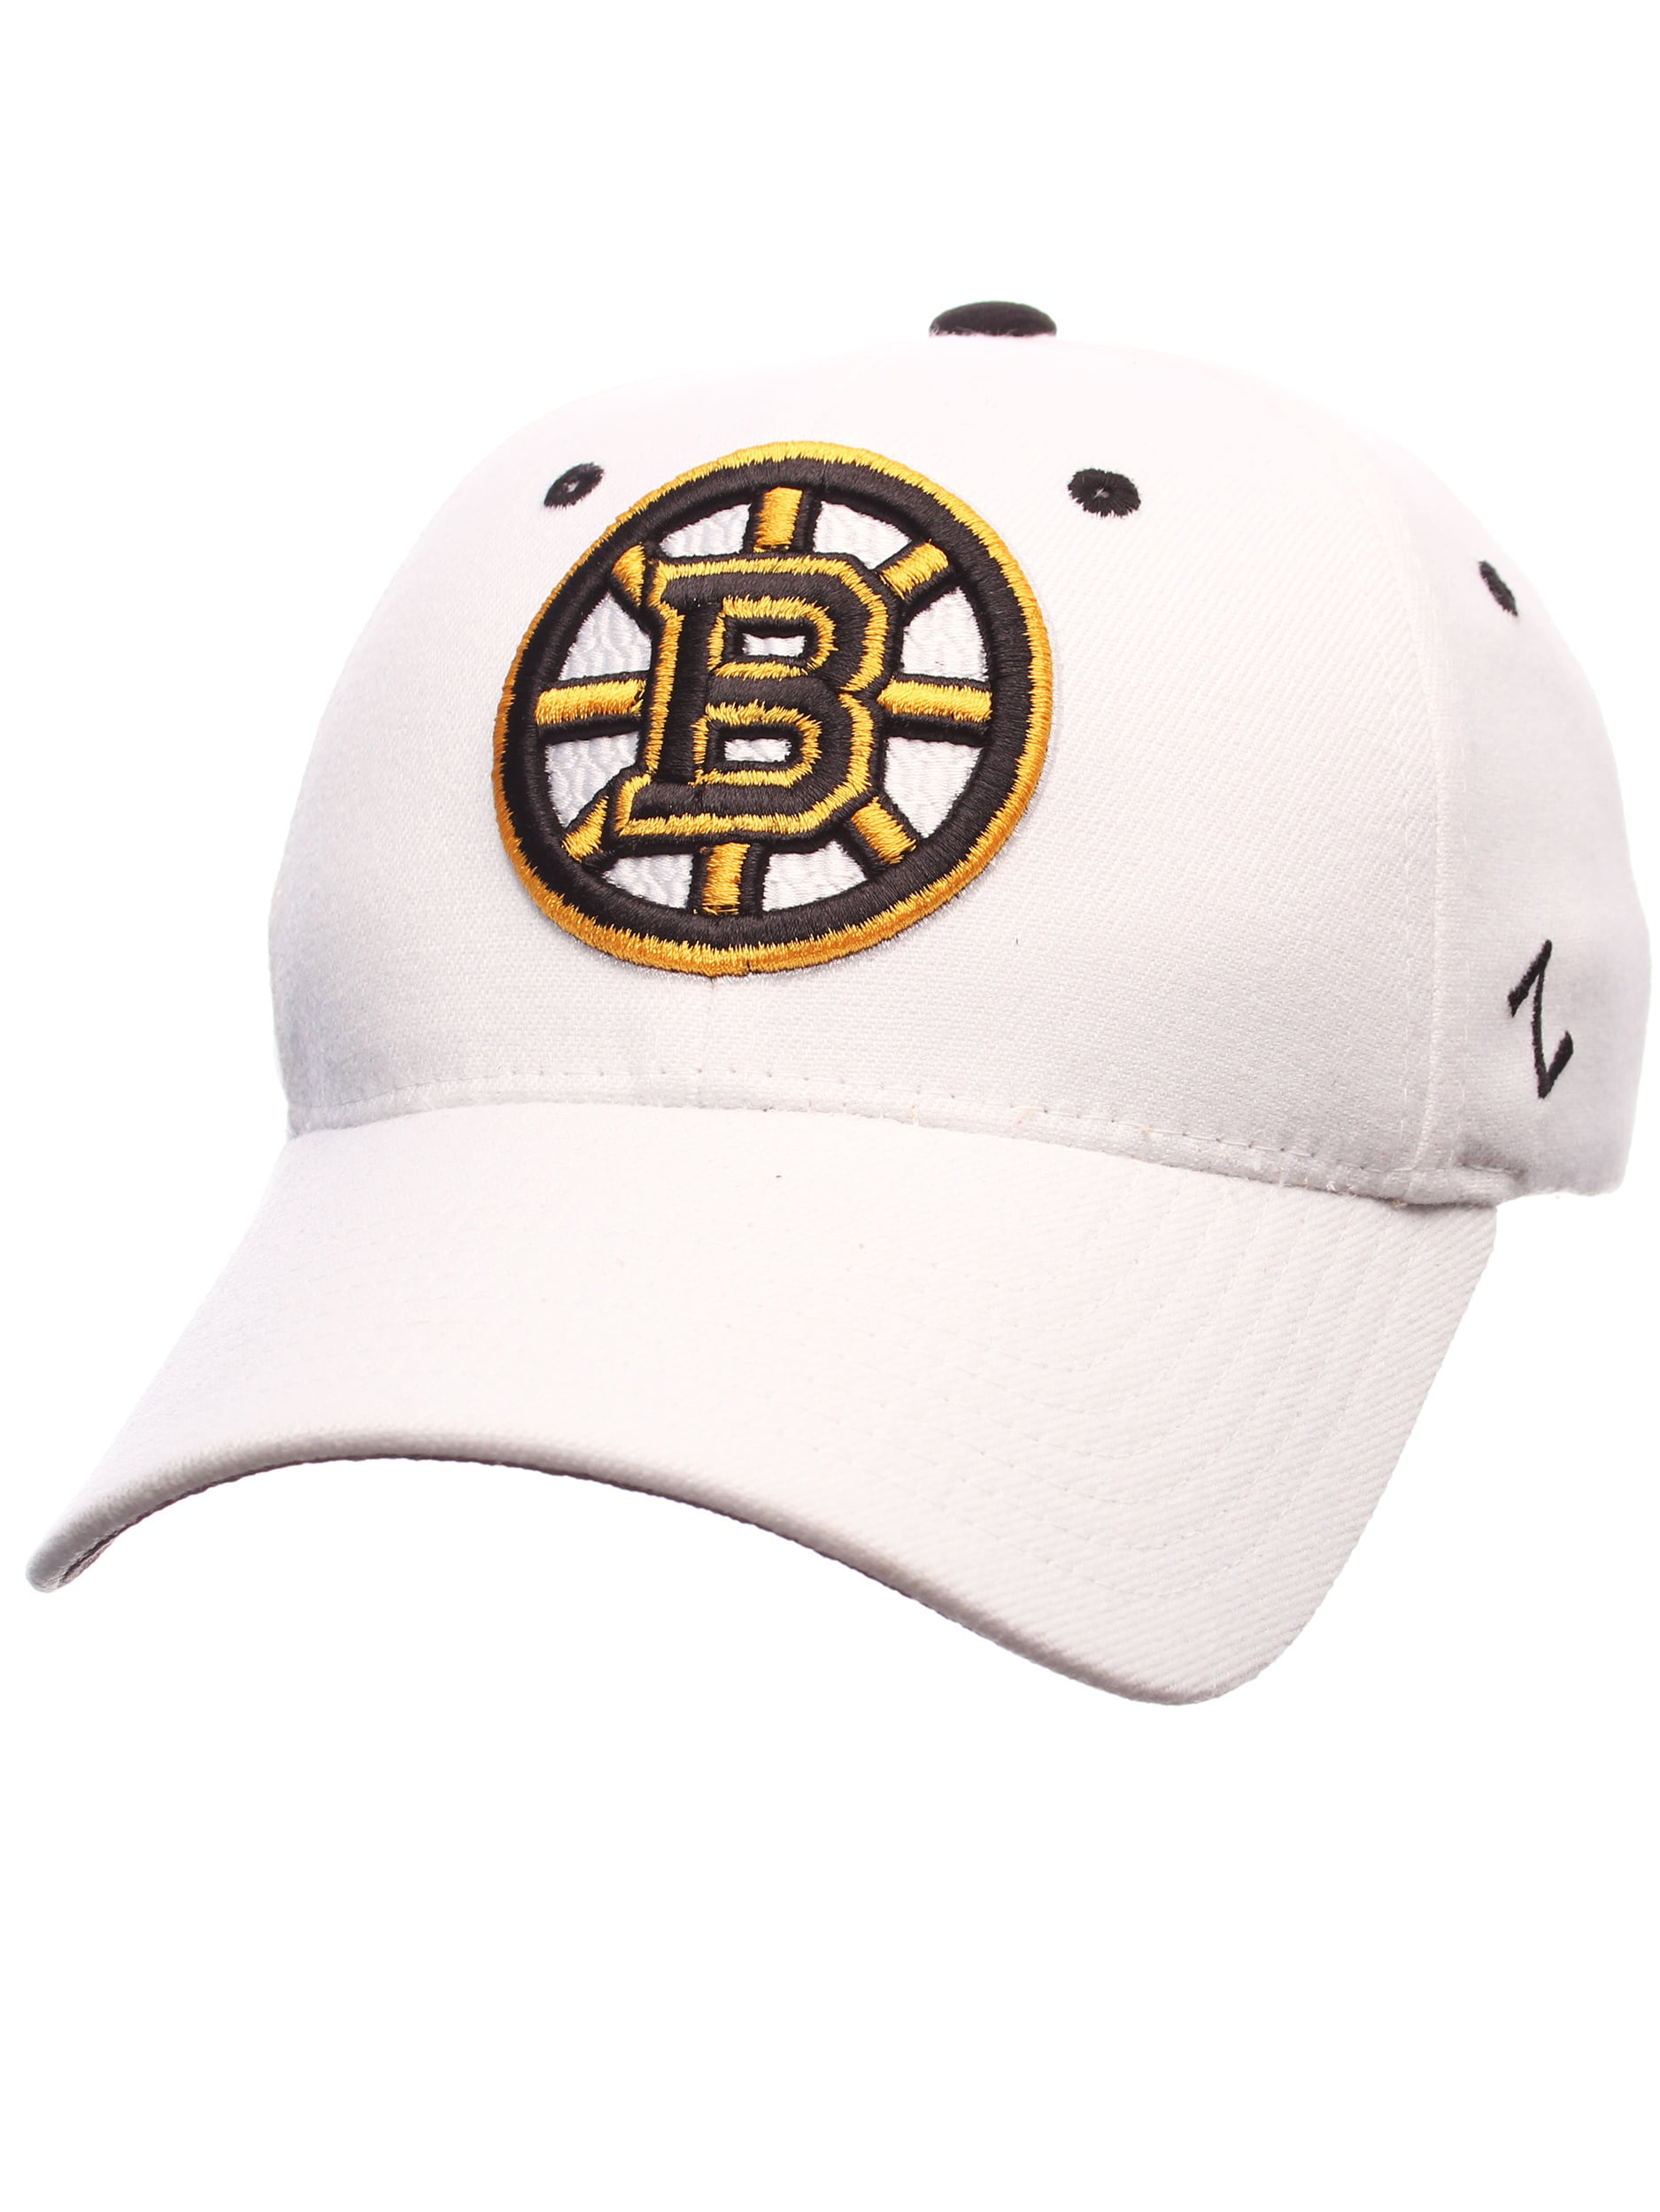 white boston bruins hat